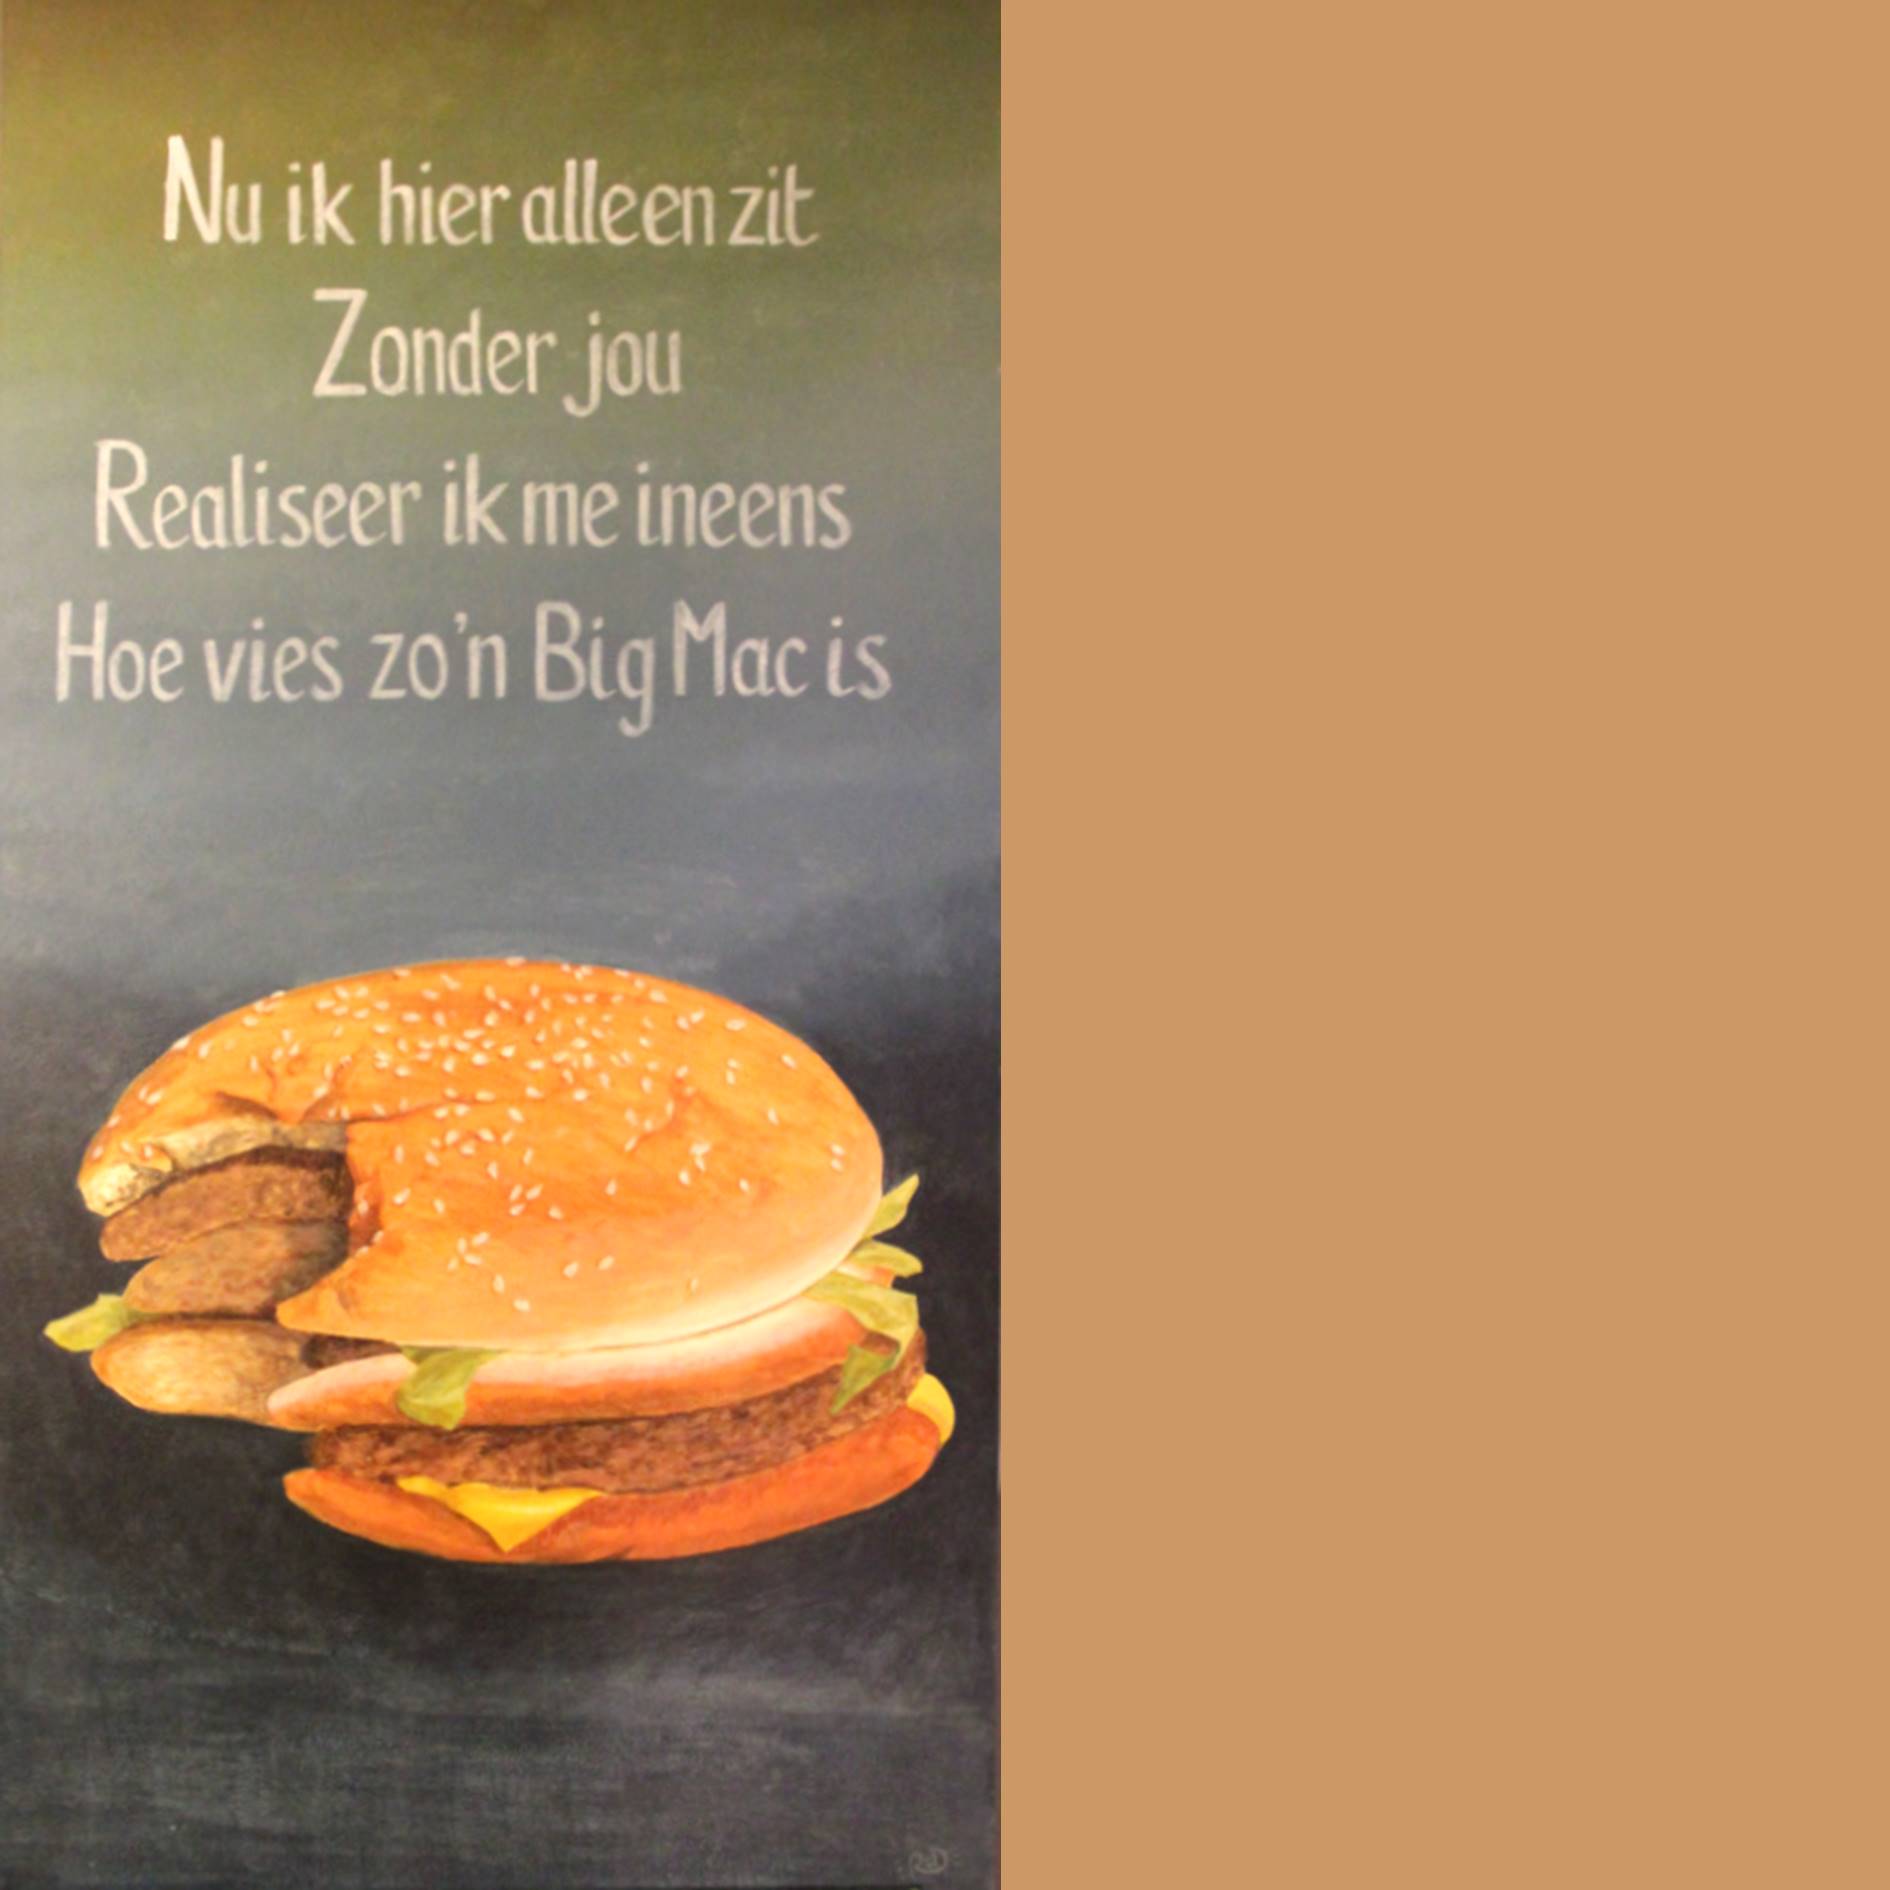 Schilderij van een Big Mac met daarboven het gedicht